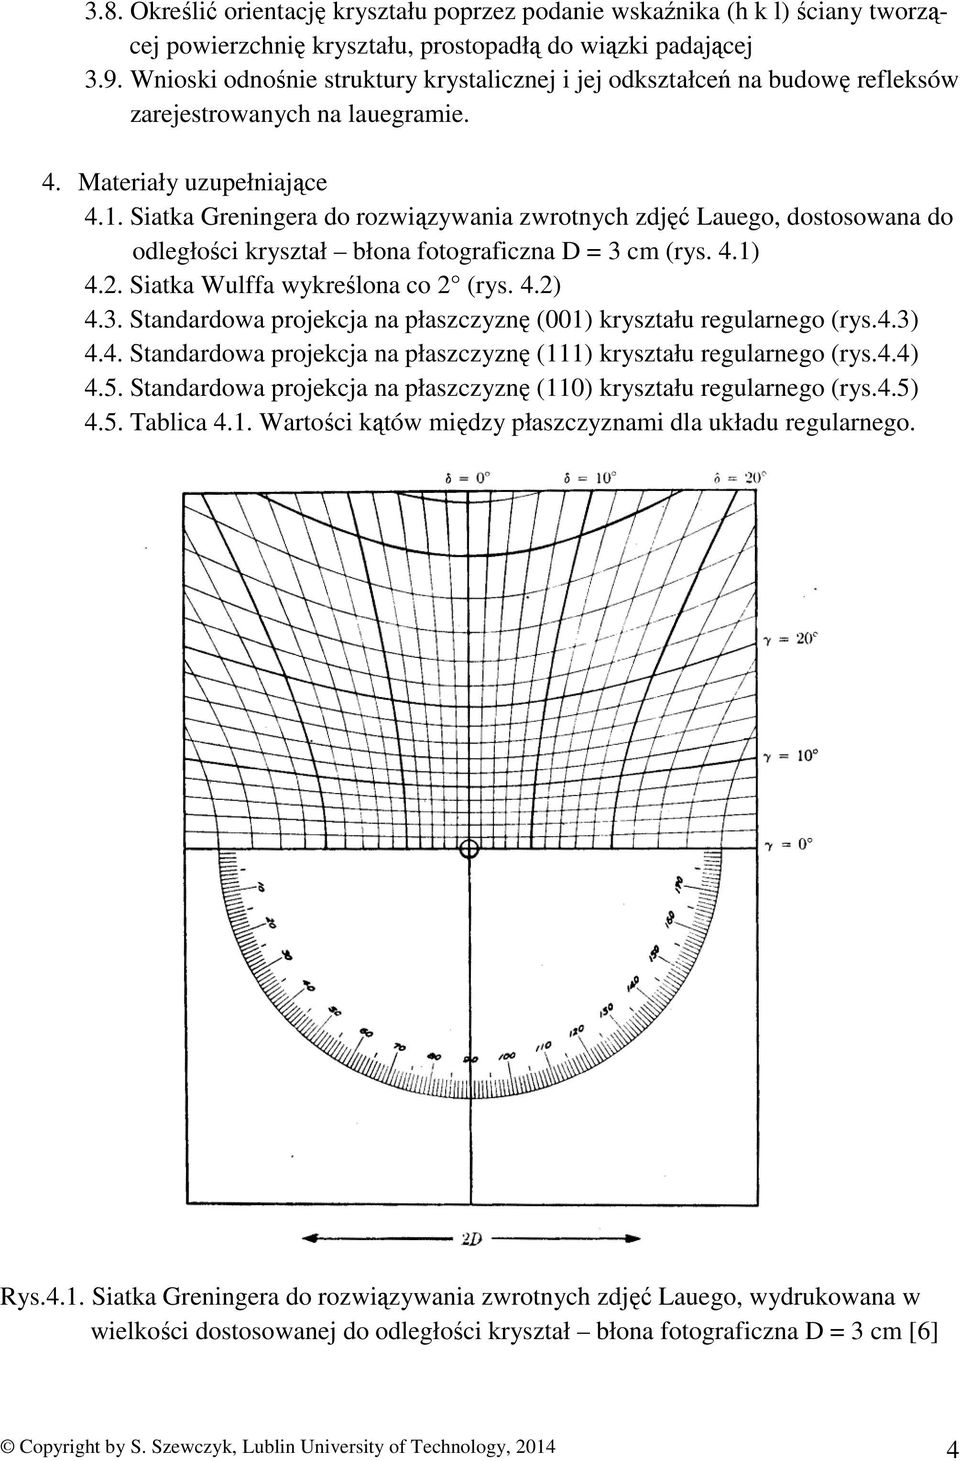 Siatka Greningera do rozwiązywania zwrotnych zdjęć Lauego, dostosowana do odległości kryształ błona fotograficzna D = 3 cm (rys. 4.1) 4.2. Siatka Wulffa wykreślona co 2 (rys. 4.2) 4.3. Standardowa projekcja na płaszczyznę (001) kryształu regularnego (rys.